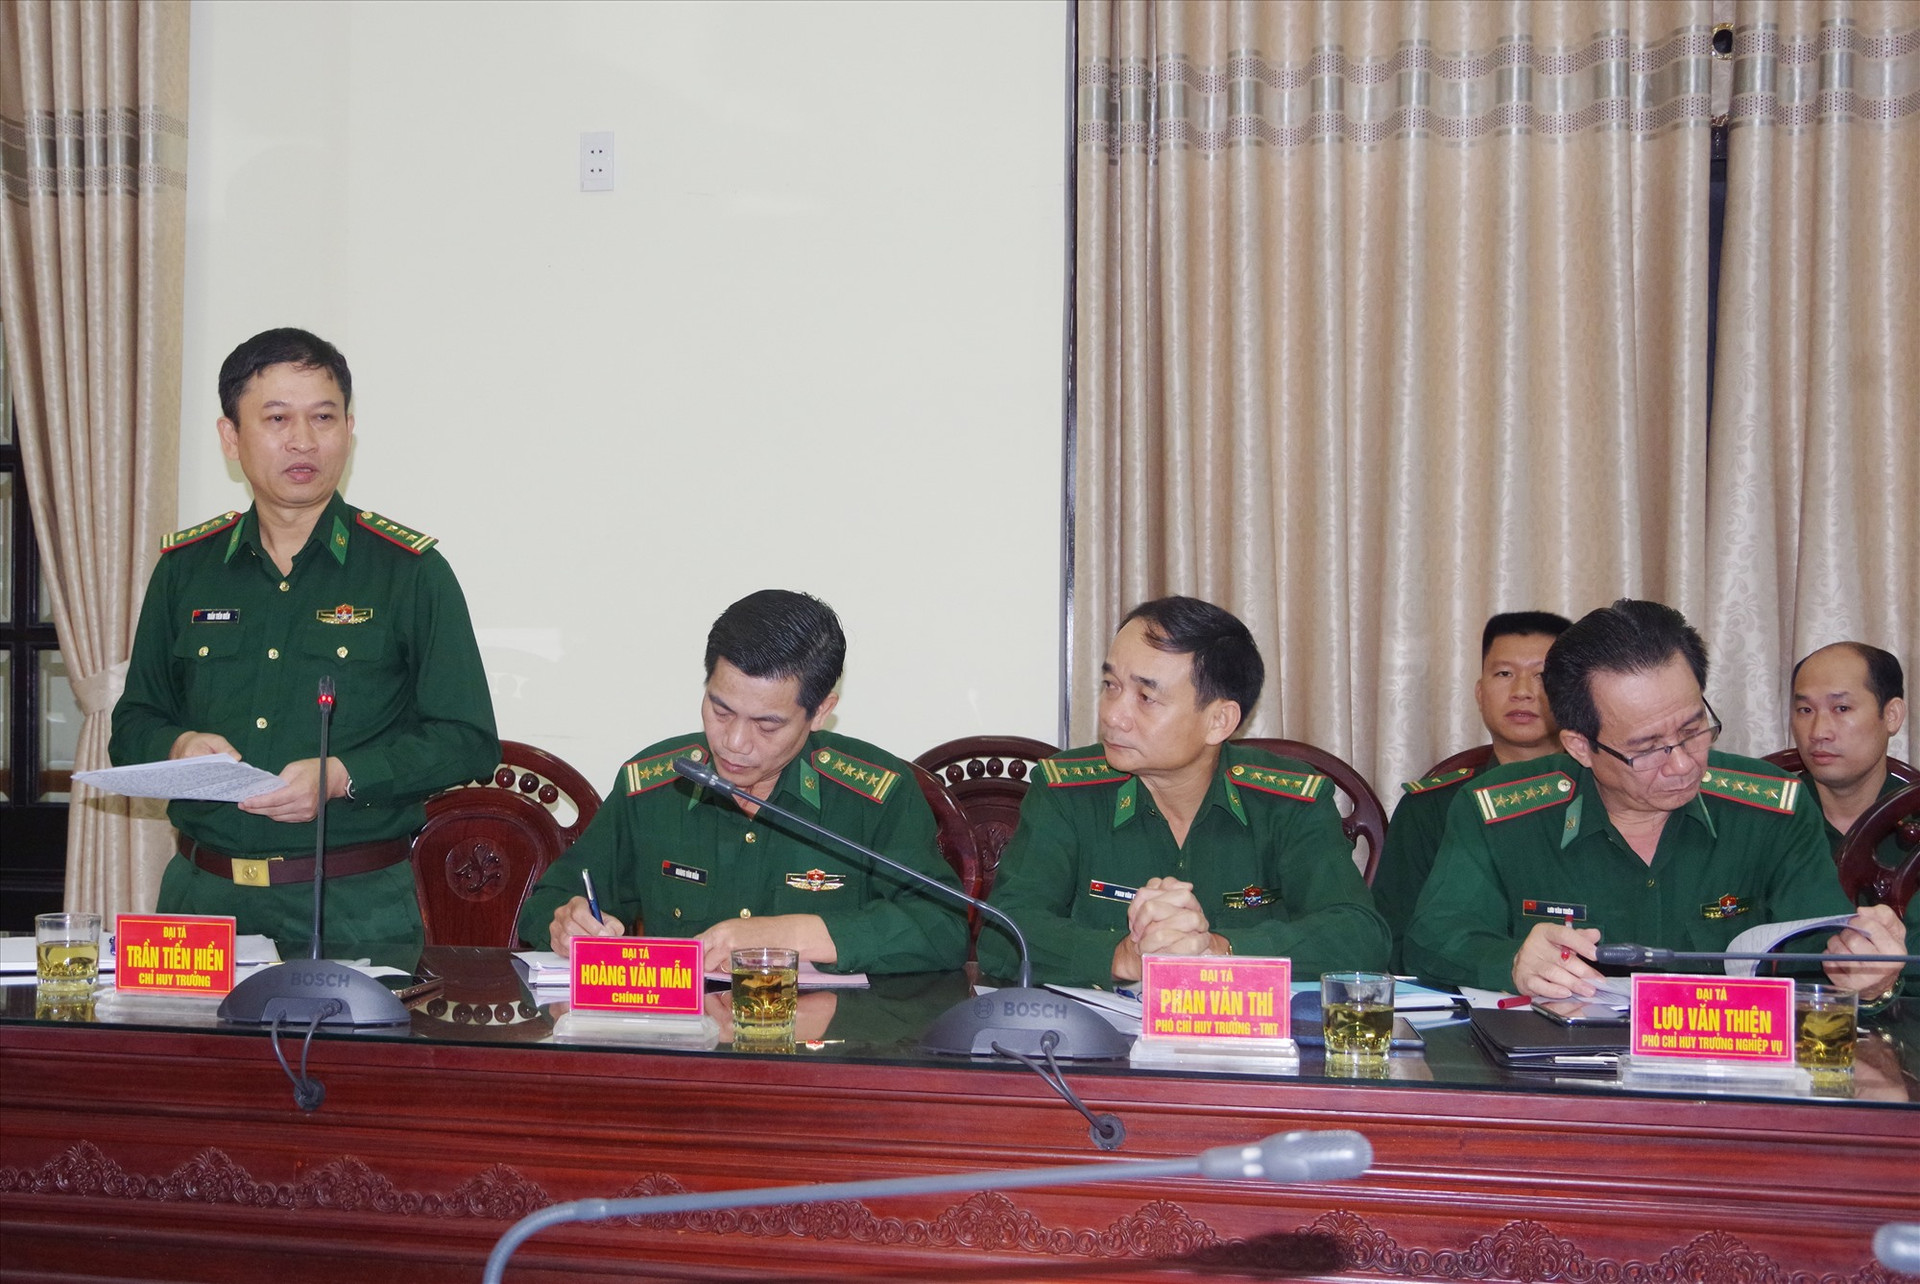 Đại tá Trần Tiến Hiền - Chỉ huy trưởng BĐBP tỉnh Quảng Nam báo cáo tại buổi kiểm tra. Ảnh: HỒNG ANH